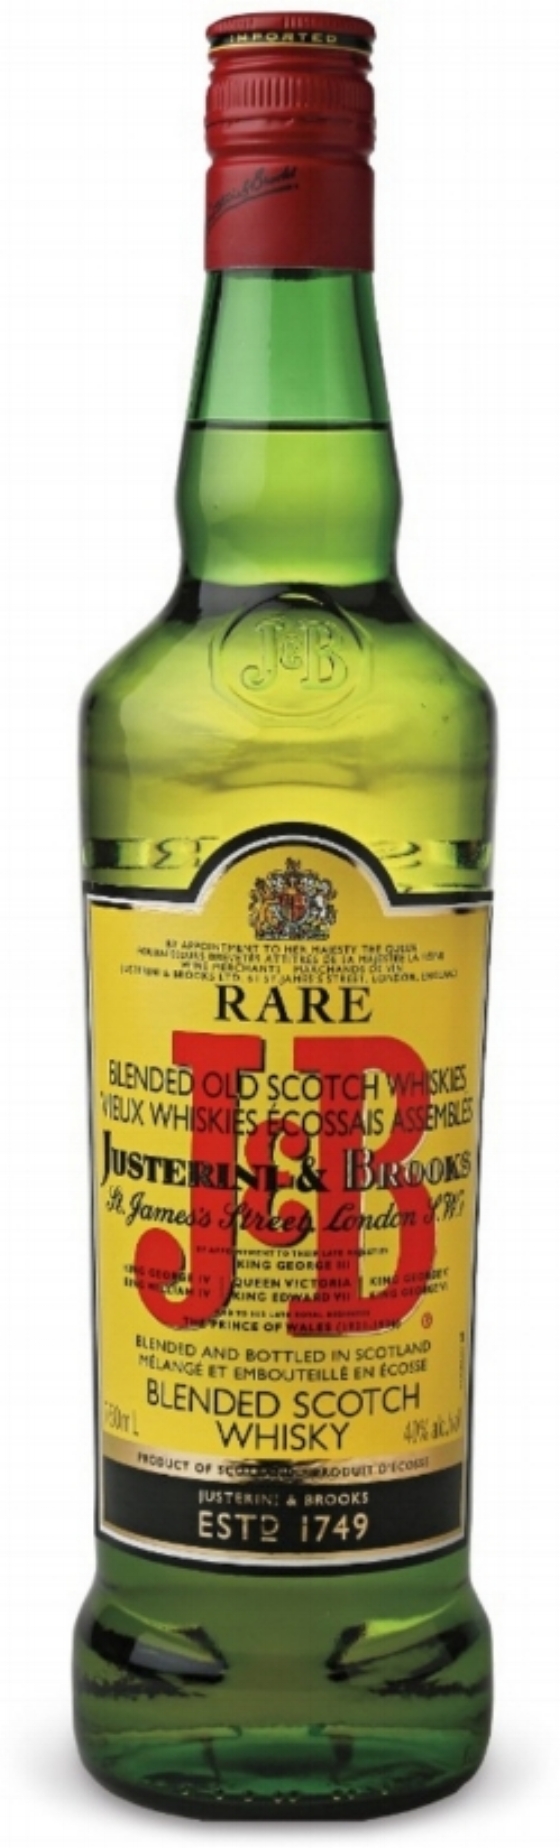 10.&nbsp;J&amp;B Rare Blended Scotch Whisky